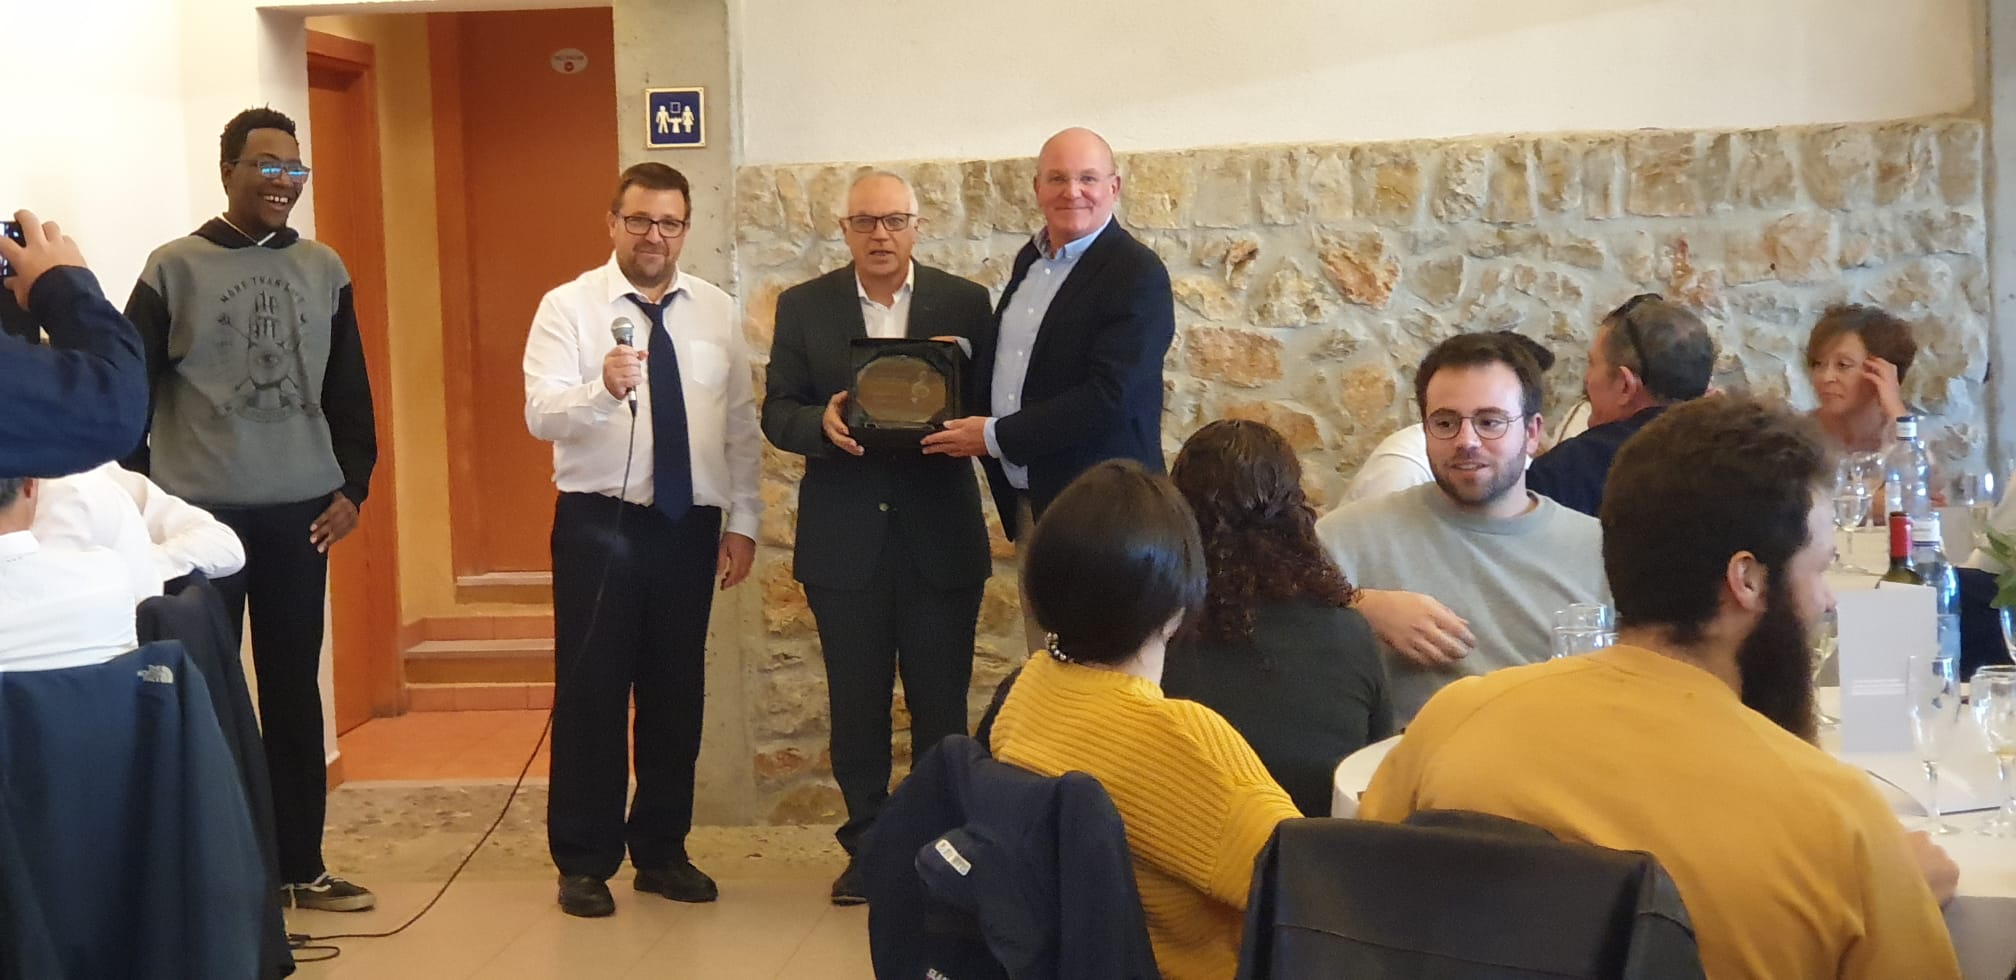 La Unió Musical de Marratxí premia a la Fundación Baleària por su promoción cultural